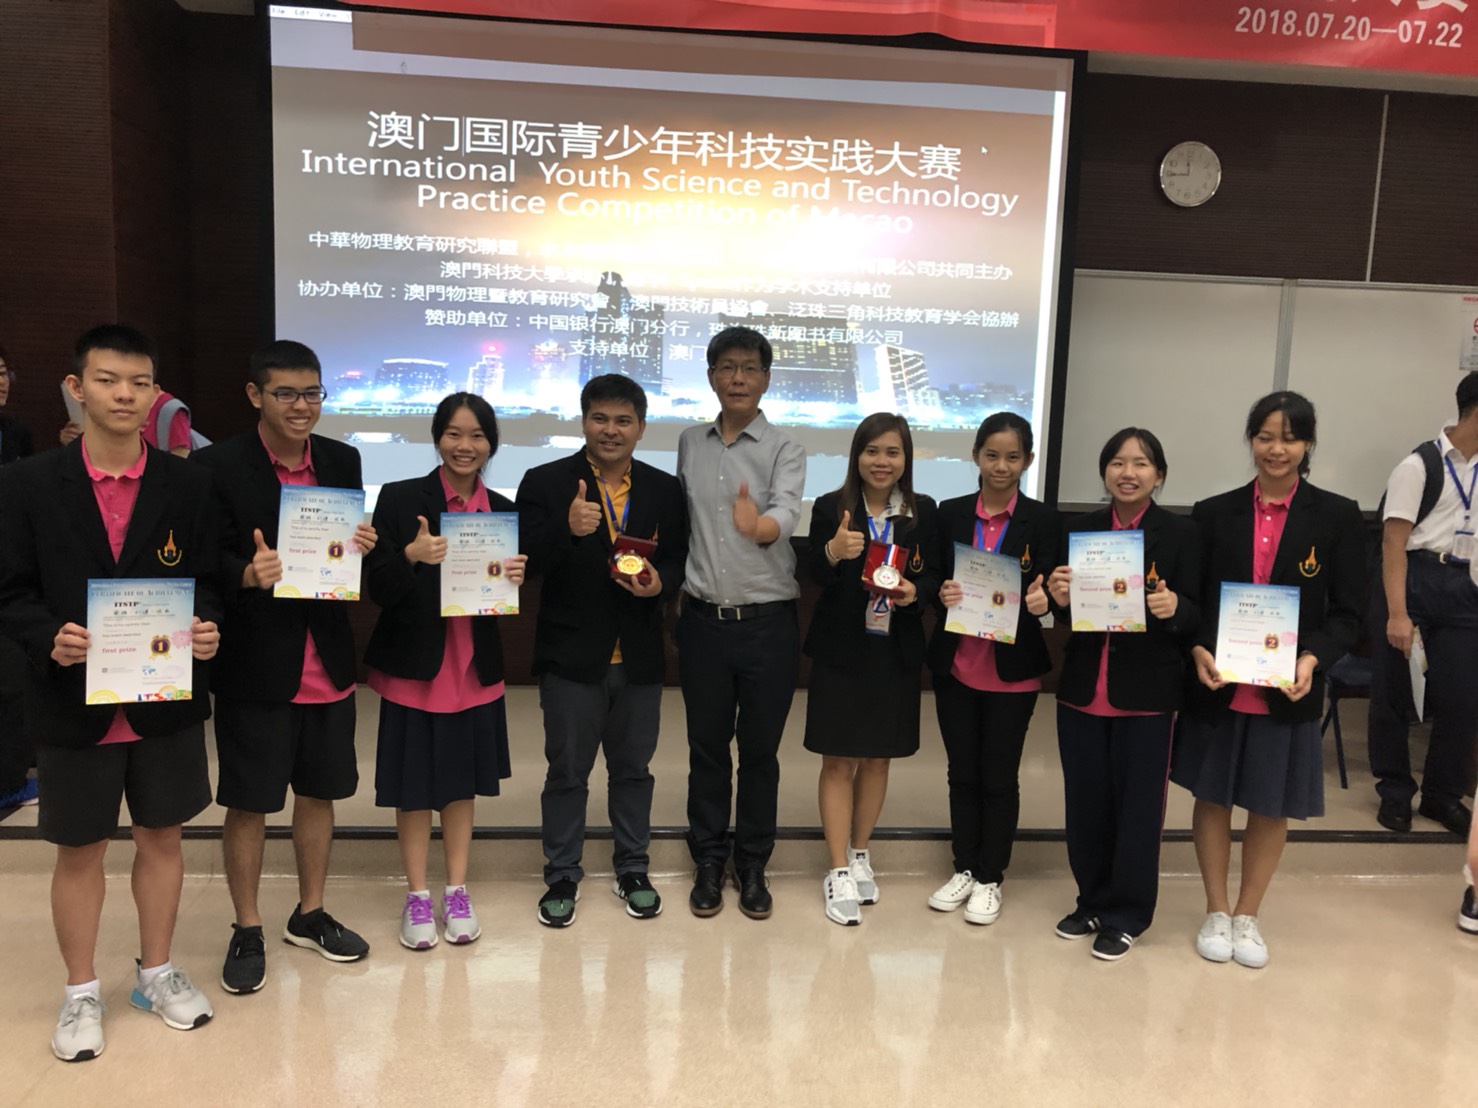 โรงเรียนมัธยมวัดนายโรงเข้าร่วมการแข่งขัน The International Youth Science and Technology Practice Competition ณ สาธารณรัฐประชาชนจีน